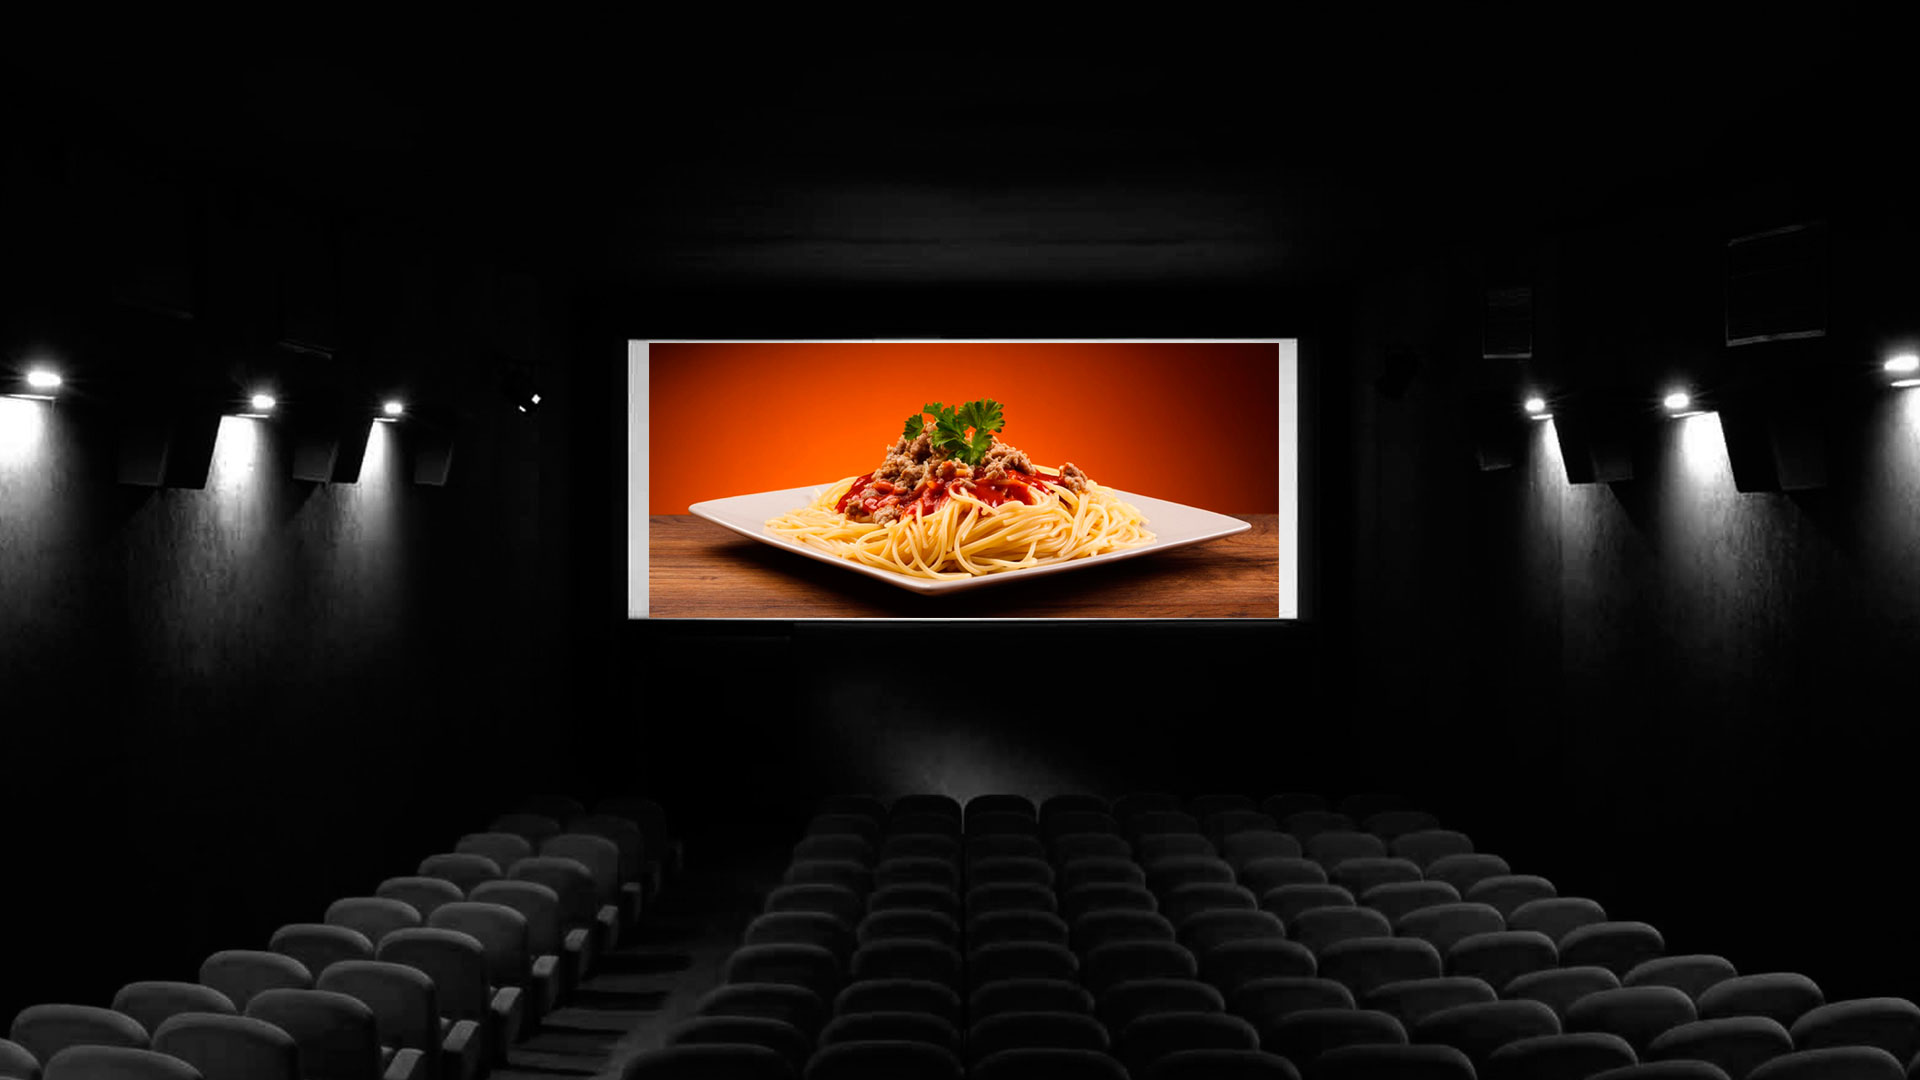 El Festival Internacional de Cine de San Sebastián, en el norte de España, reunirá, en su nueva edición, que comenzará el 21 de septiembre, a siete películas que abordarán de alguna manera aspectos relacionados con la gastronomía en la sección Culinary Zinema, que organiza el certamen cinematográfico para esta nueva edicón. 